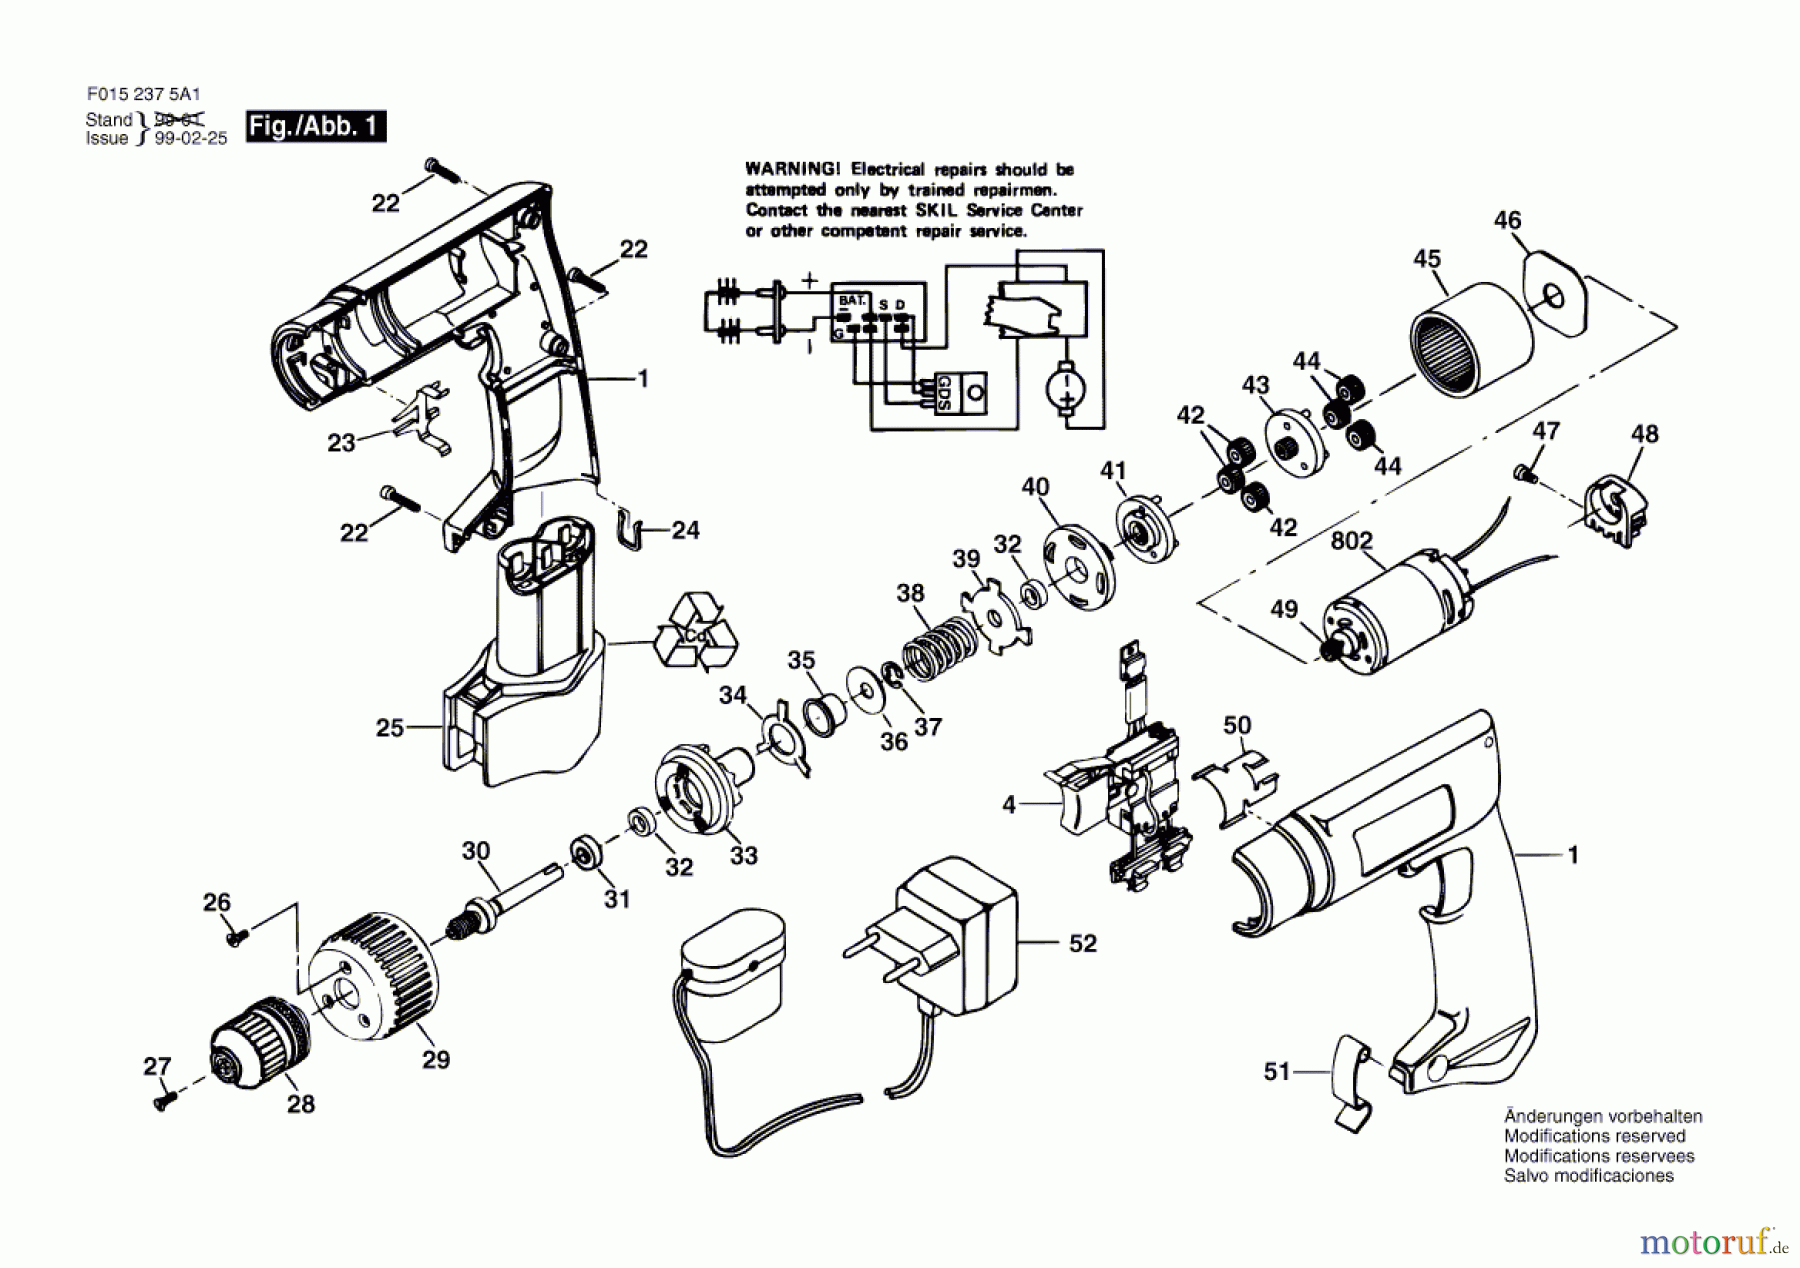  Bosch Werkzeug Bohrschrauber 2375 U1 Seite 1